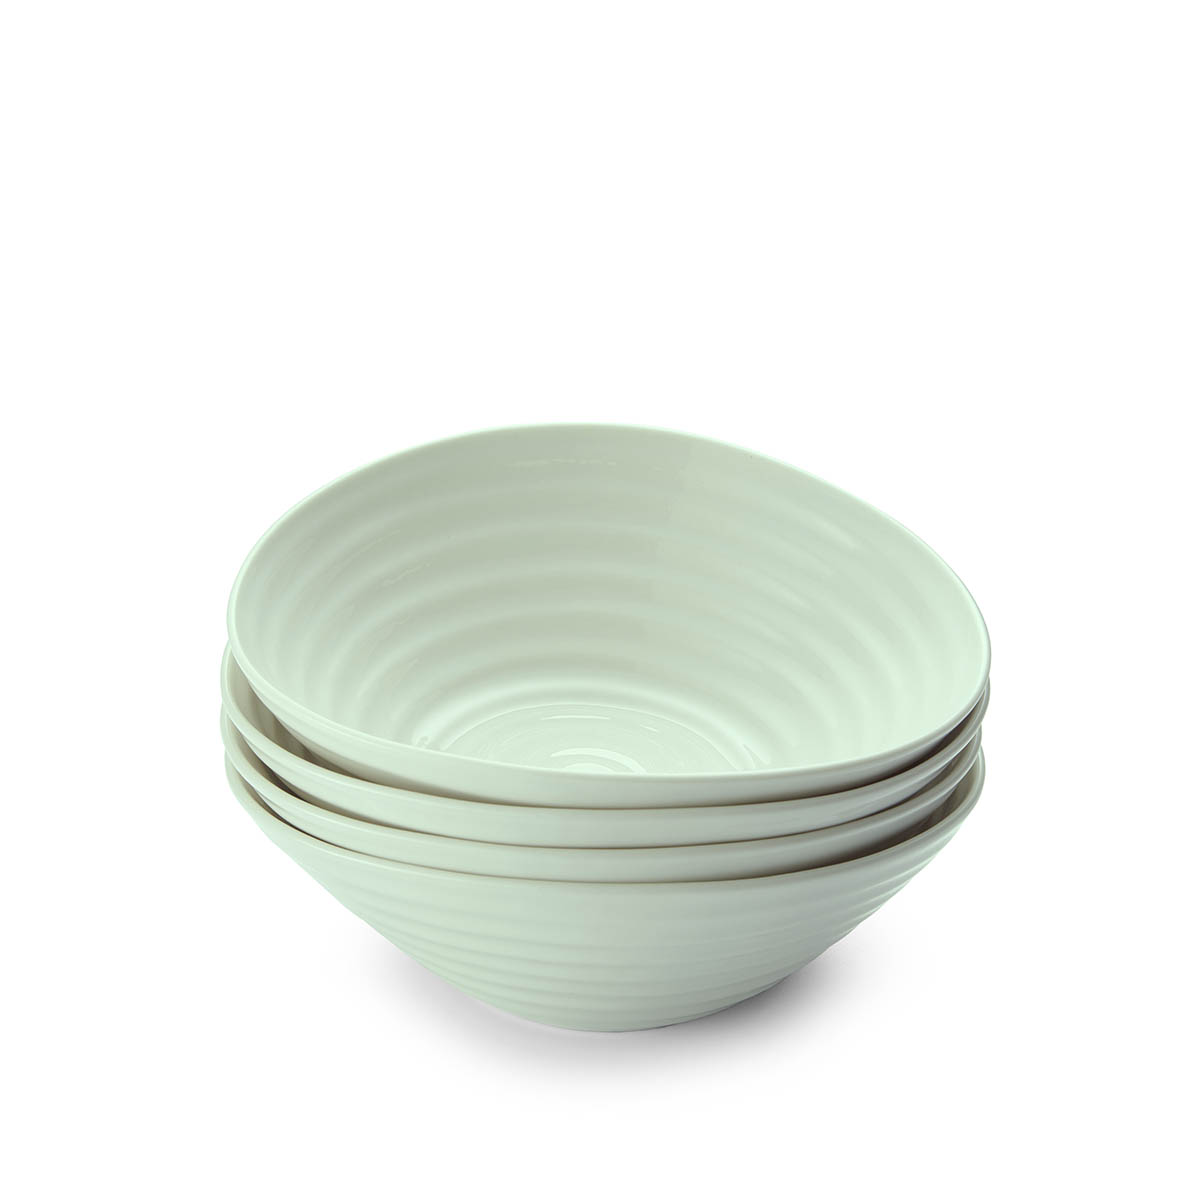 Sophie Conran Celadon Set of 4 Cereal Bowls image number null